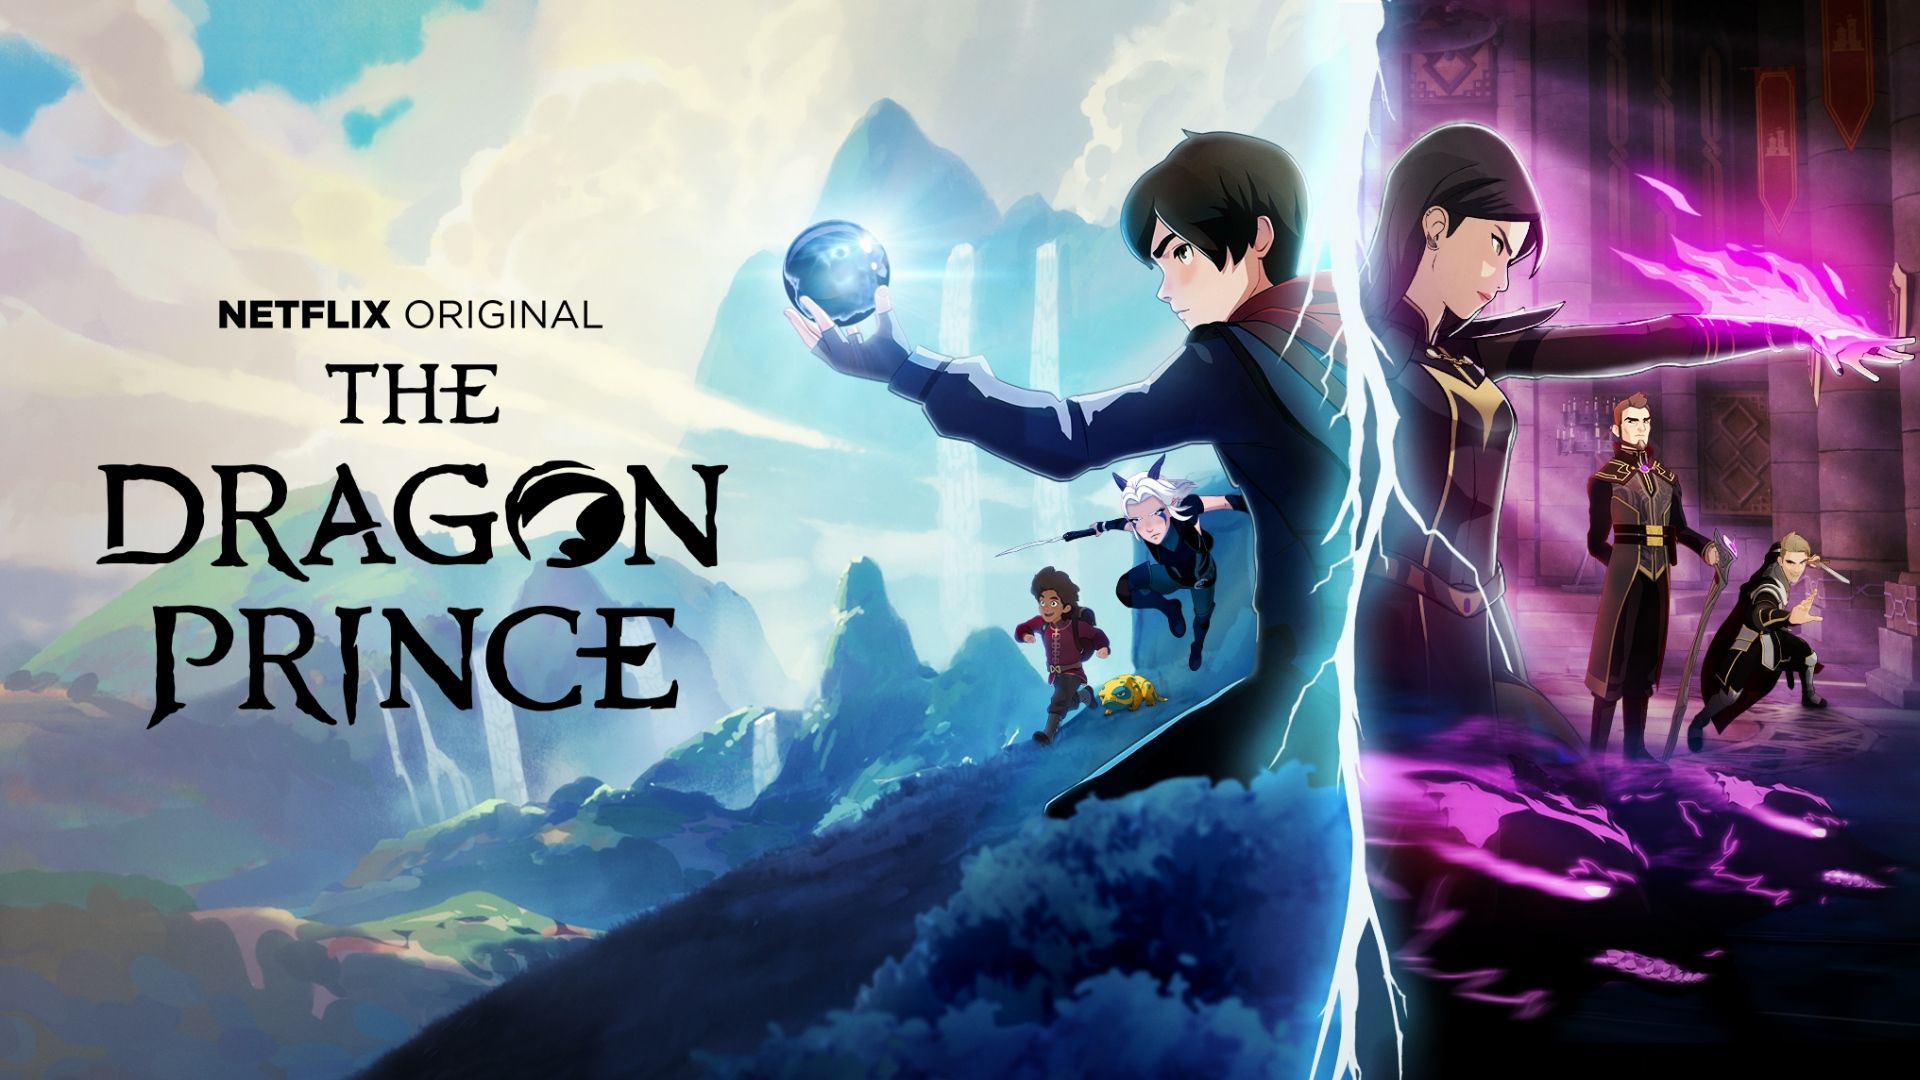 Le Prince Dragon Saison 4: Tout ce que nous savons jusqu'à présent + Bande annonce !! prince dragon